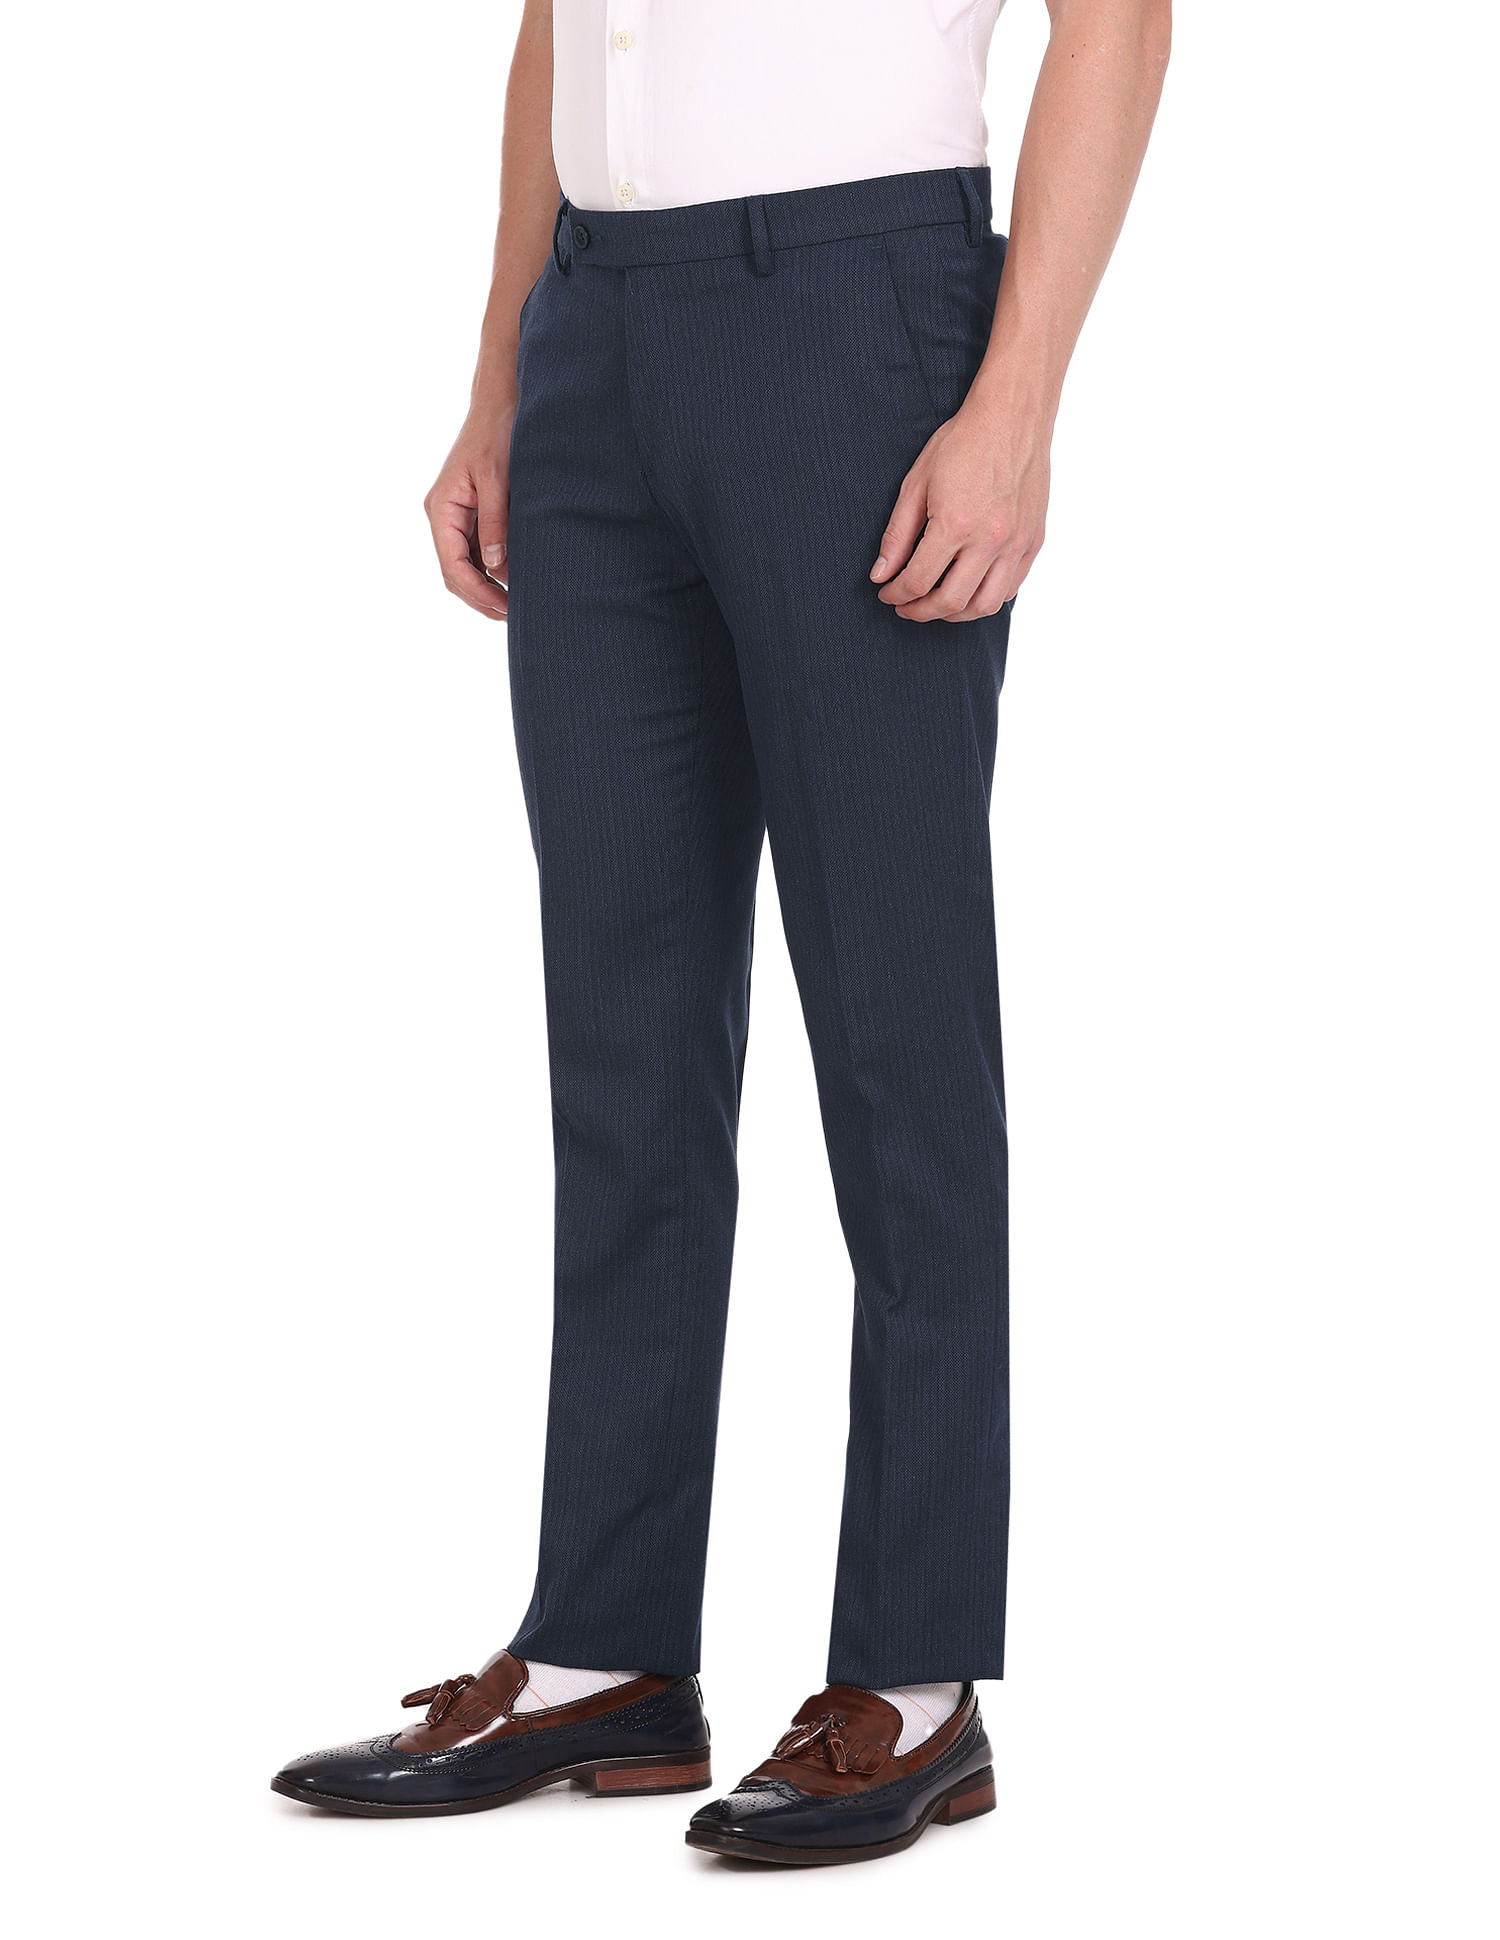 Men Dress Pants High Waist Fashion Design Stretch Casual Trousers Office  Social Business Slim Fit Suit Pants Streetwear Hombre  Suit Pants   AliExpress